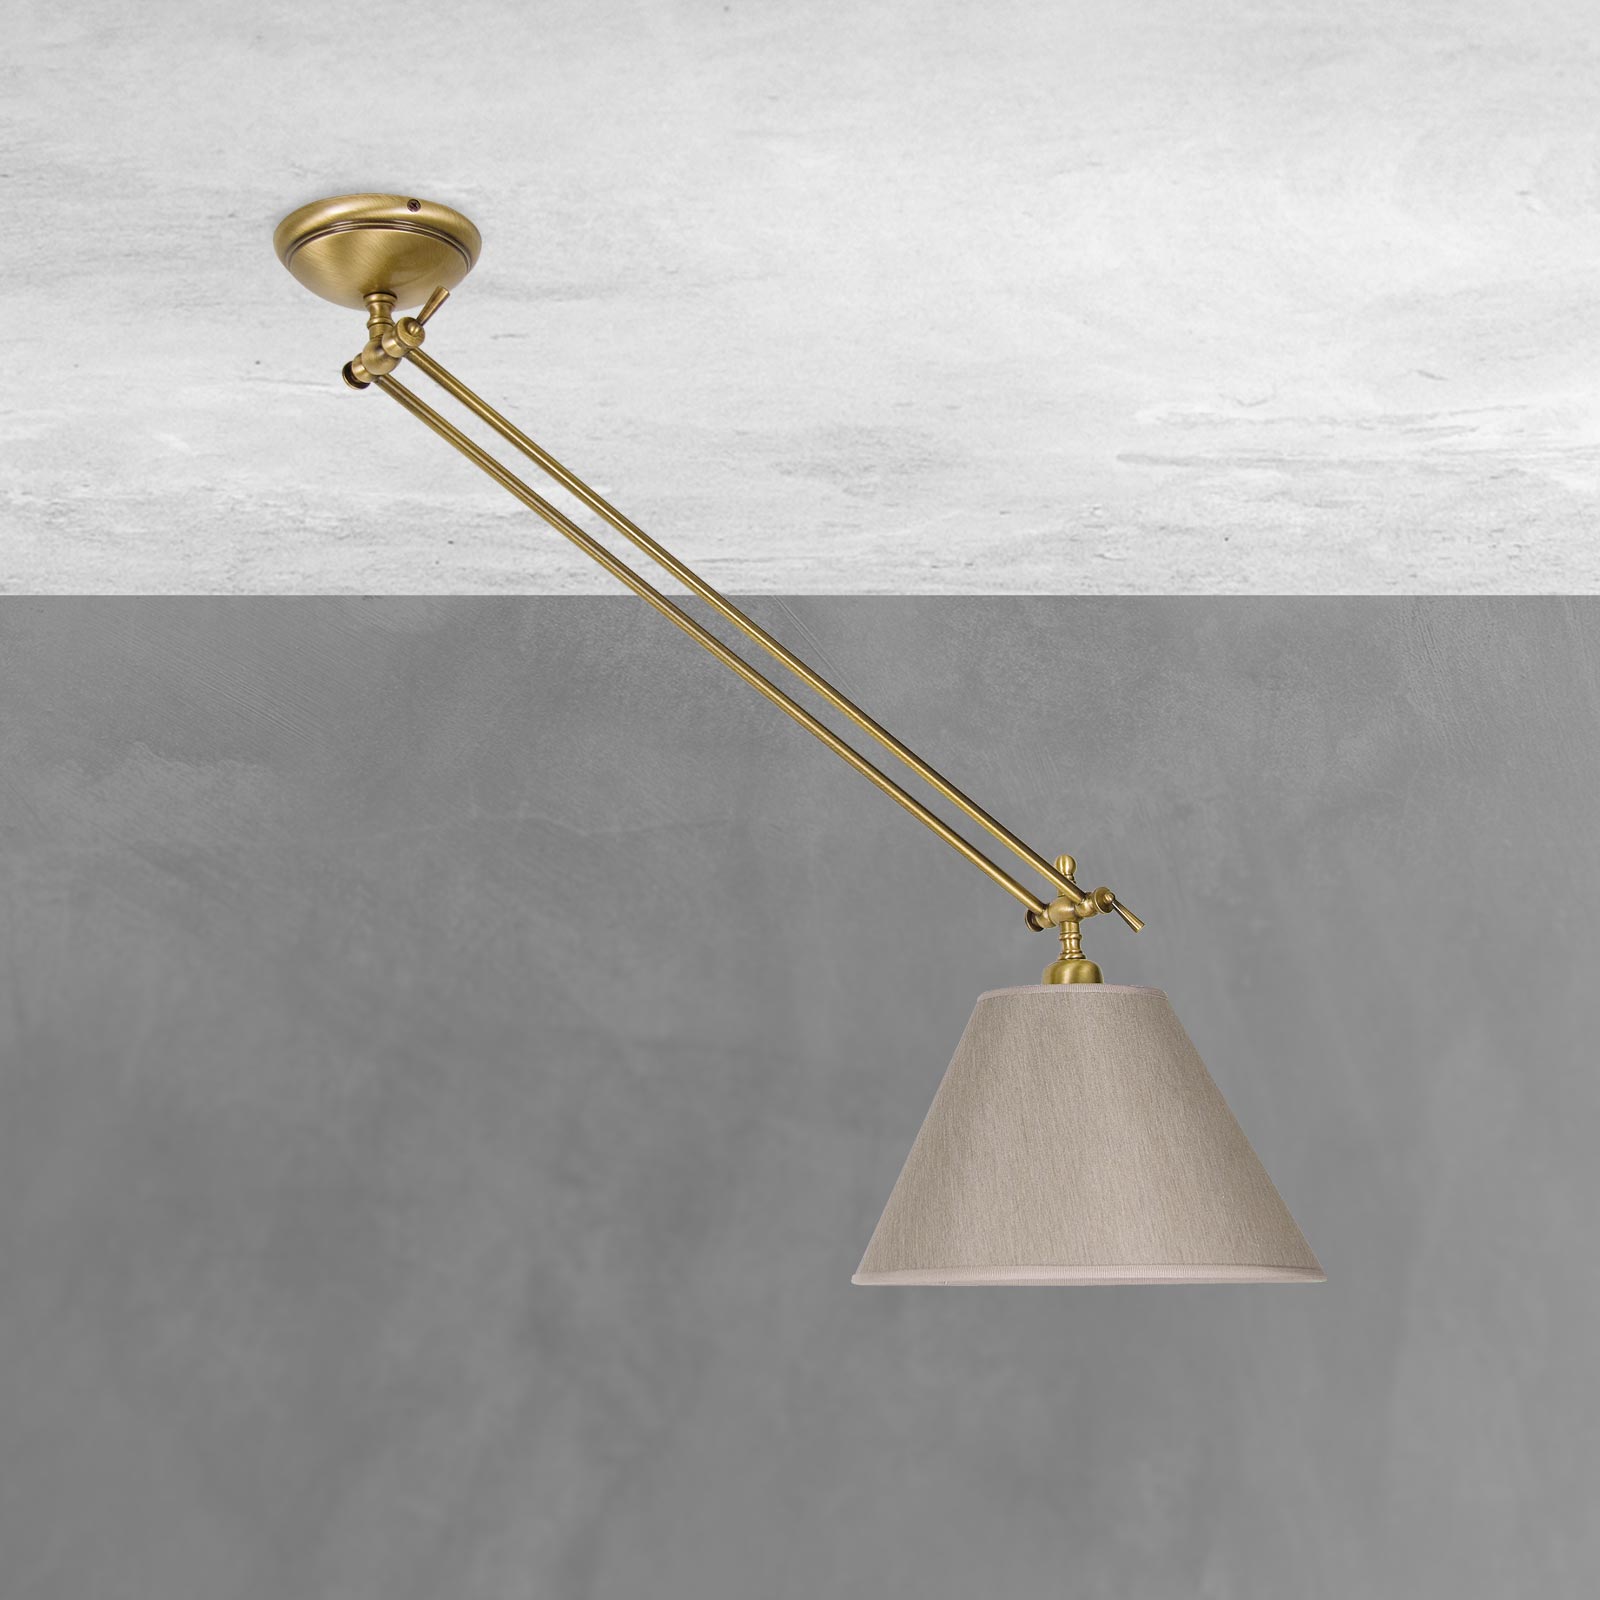 Deckenlampe verstellbar Messing Stoff in Bronze Beige E27